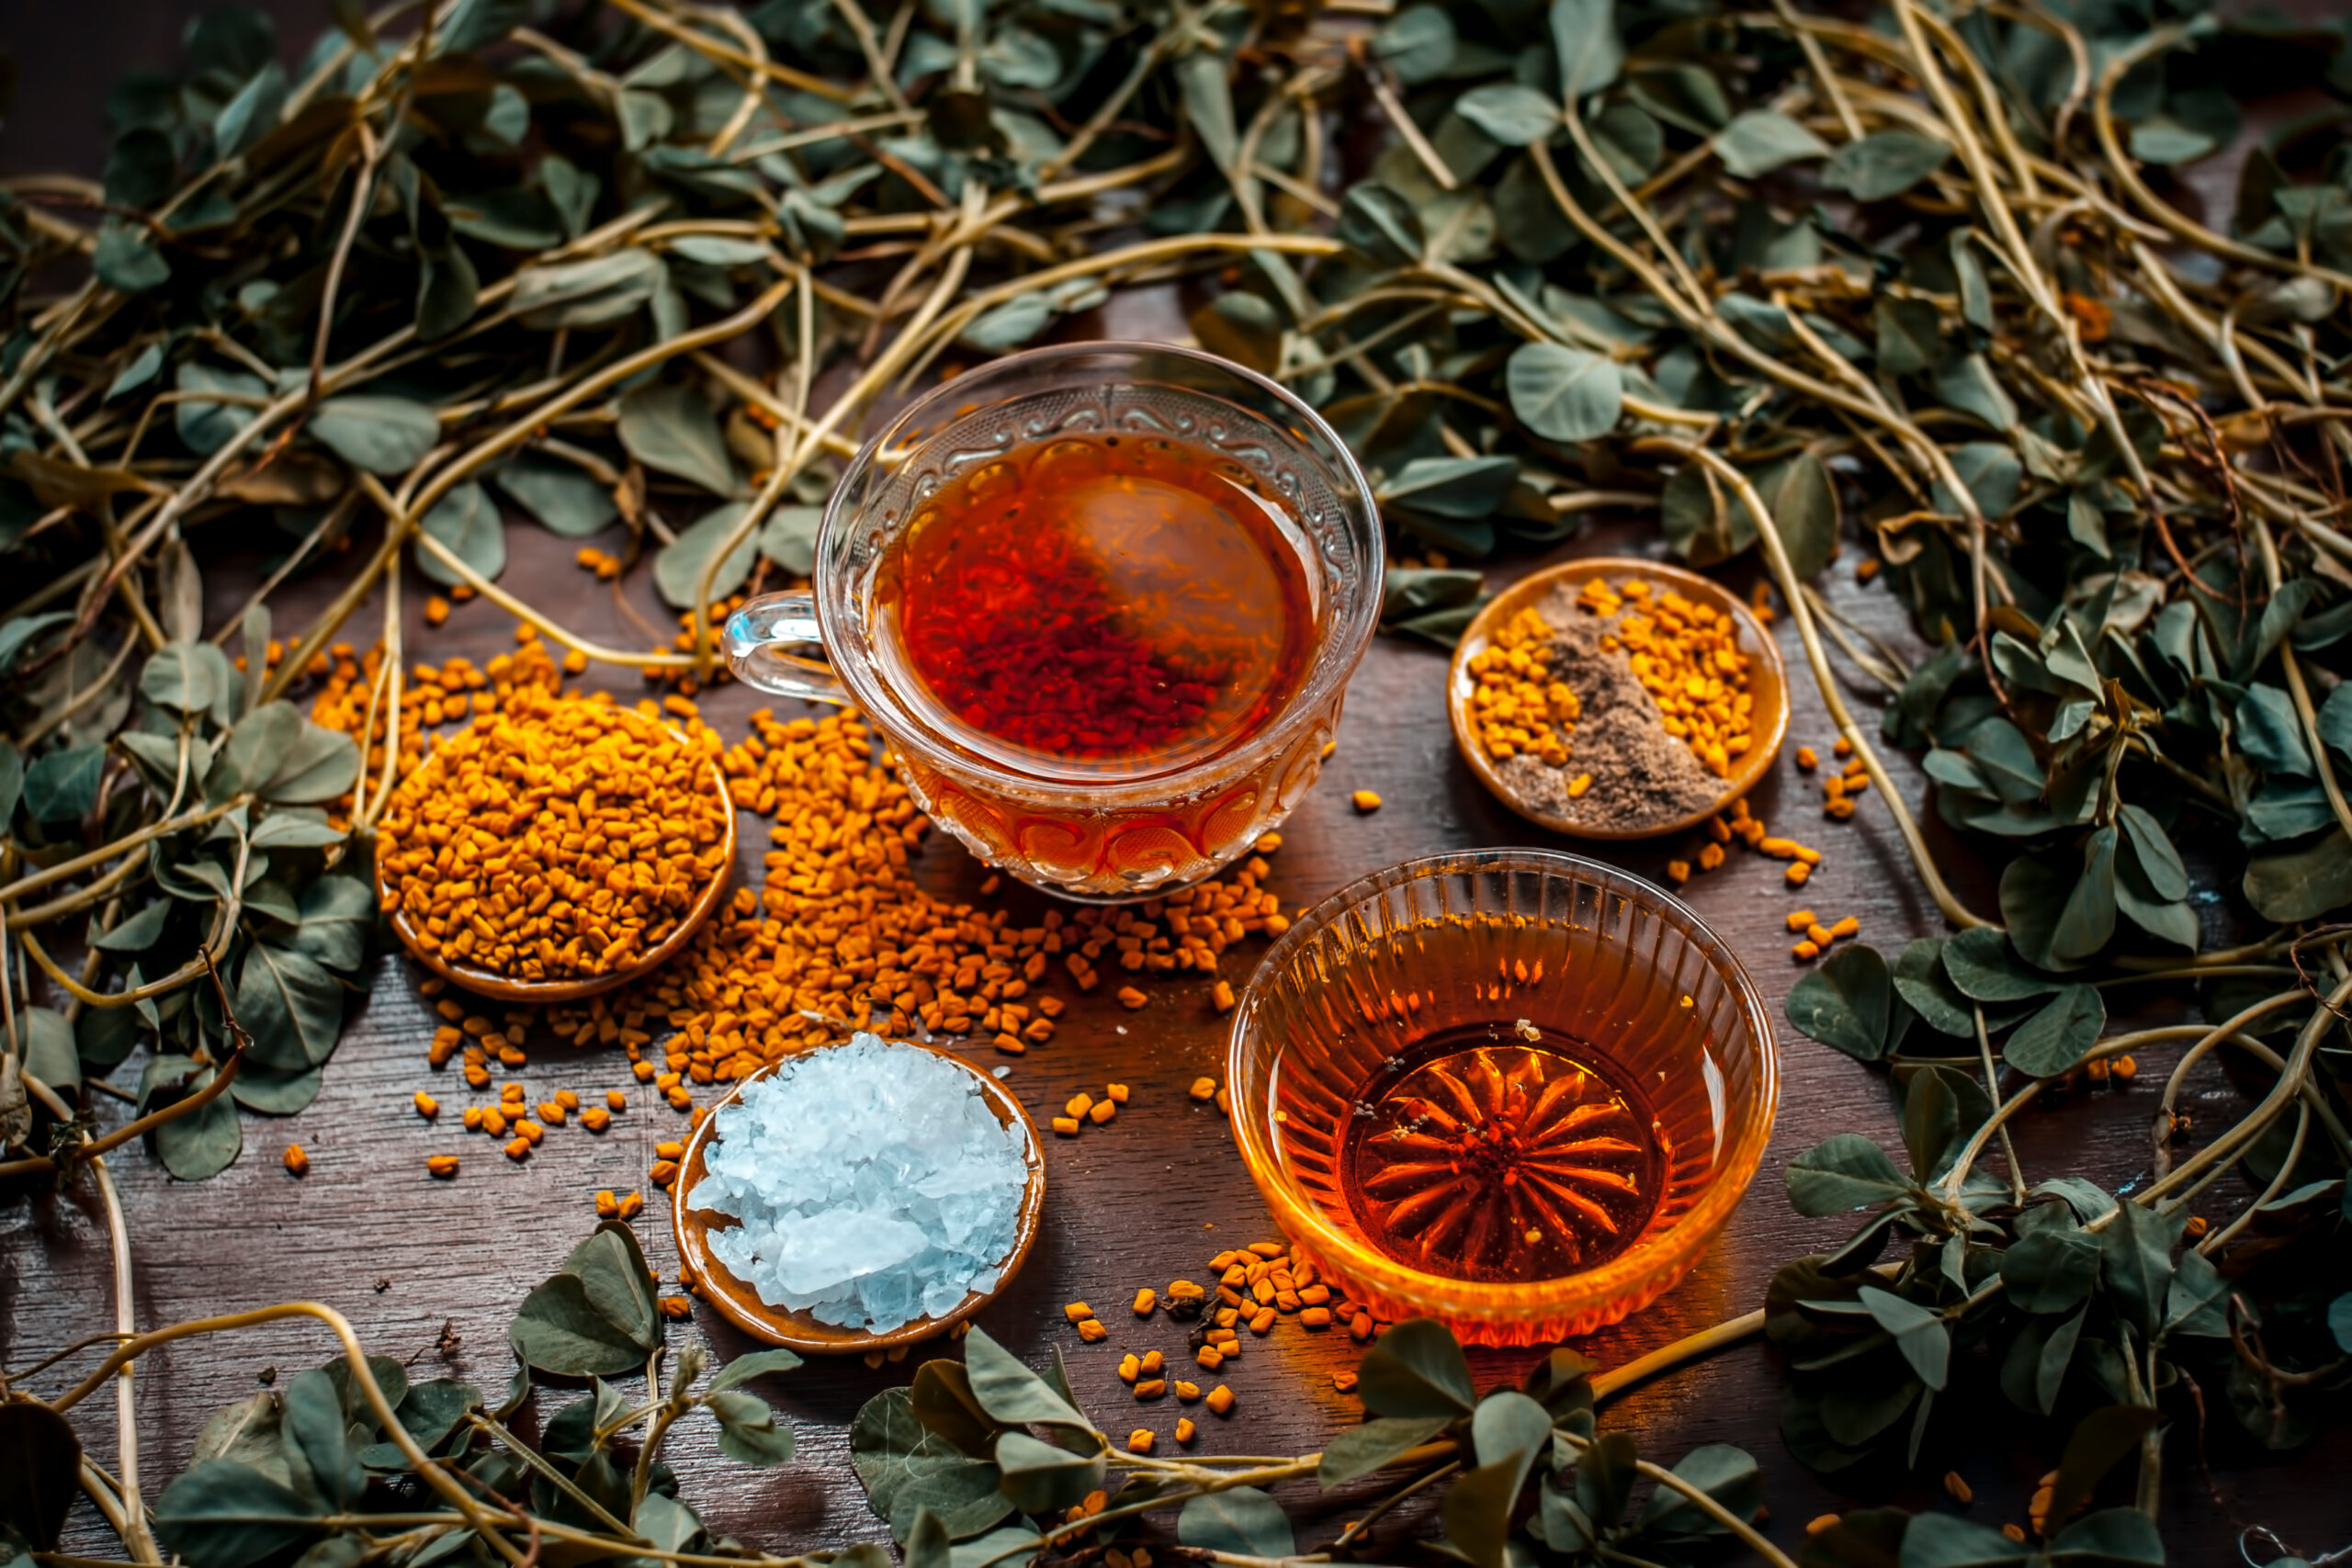 Découvrez les bienfaits de la poudre de graines de fenugrec bio – Z Natural  Foods